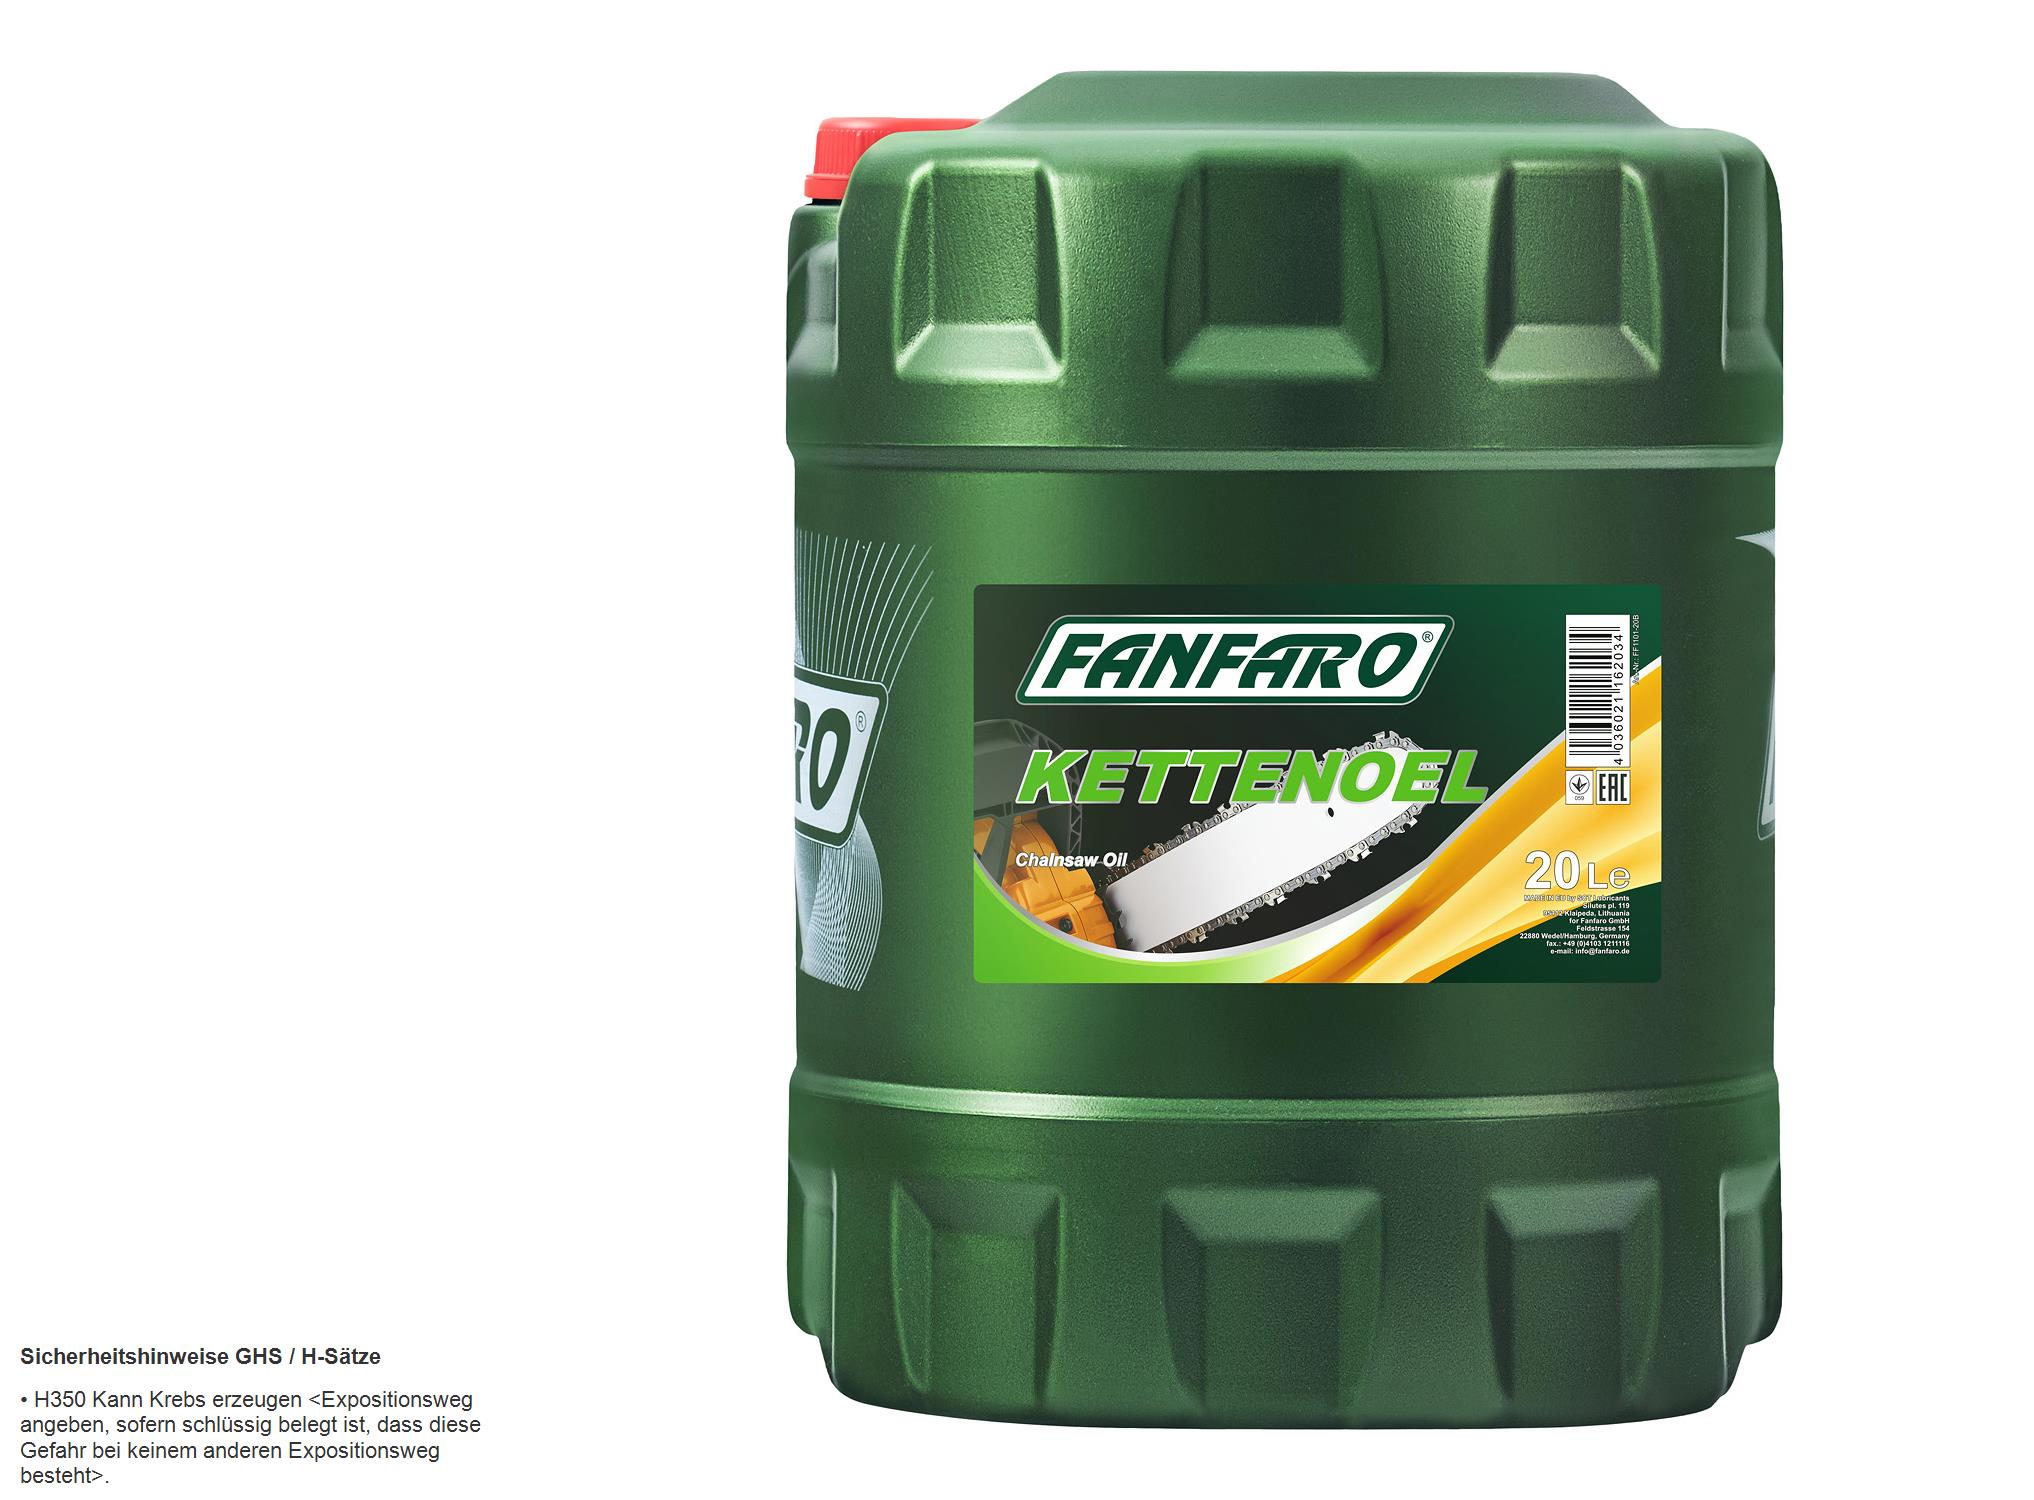 20 Liter  FANFARO FF1101-20 Kettenoel Chain Saw Oil Schmieröl